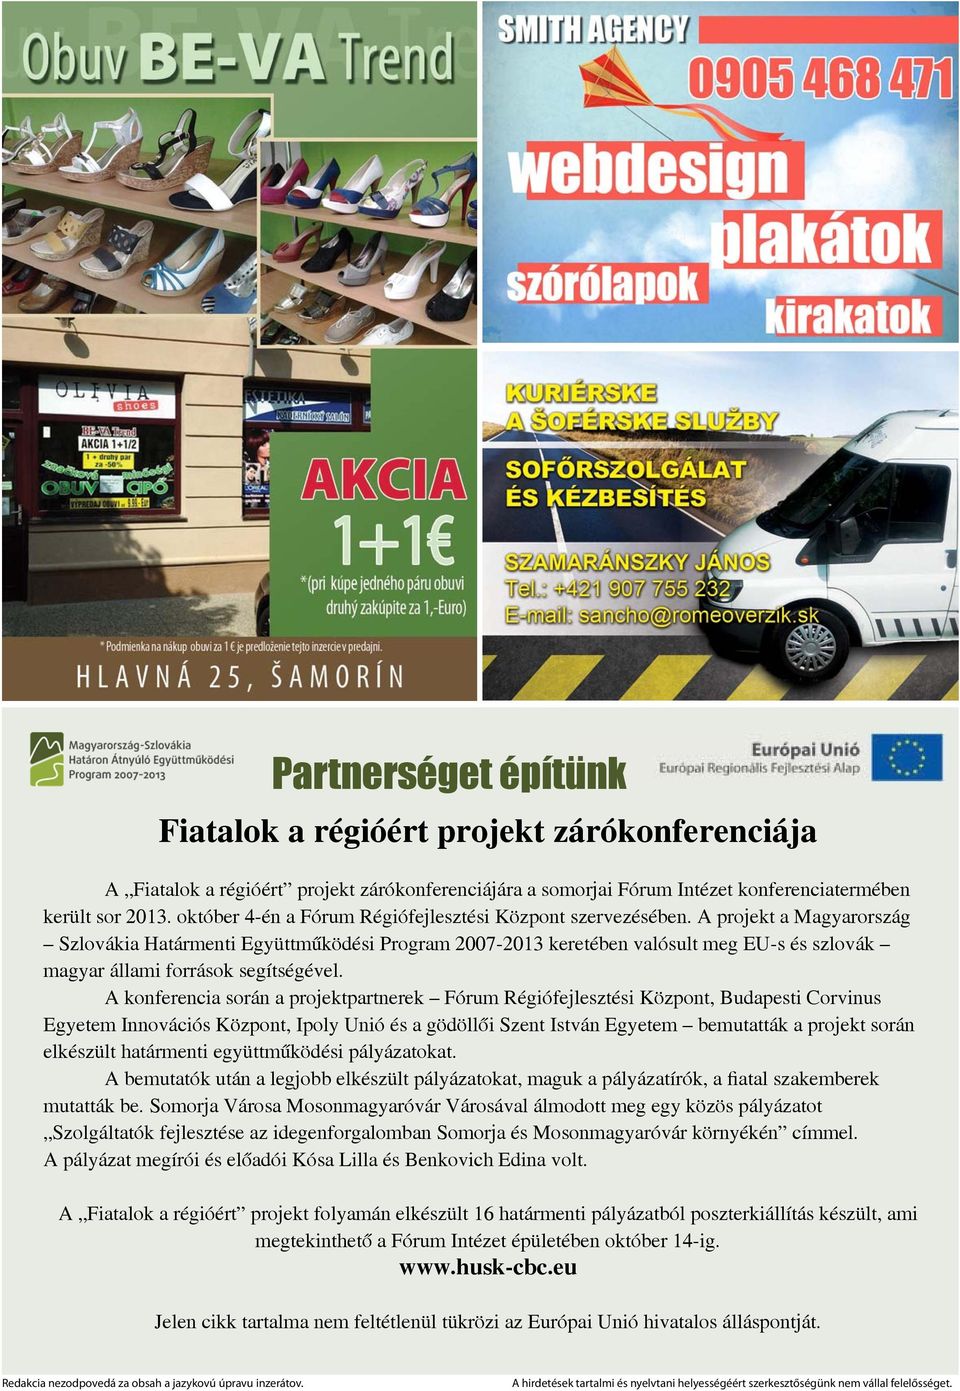 A projekt a Magyarország Szlovákia Határmenti Együttműködési Program 2007-2013 keretében valósult meg EU-s és szlovák magyar állami források segítségével.